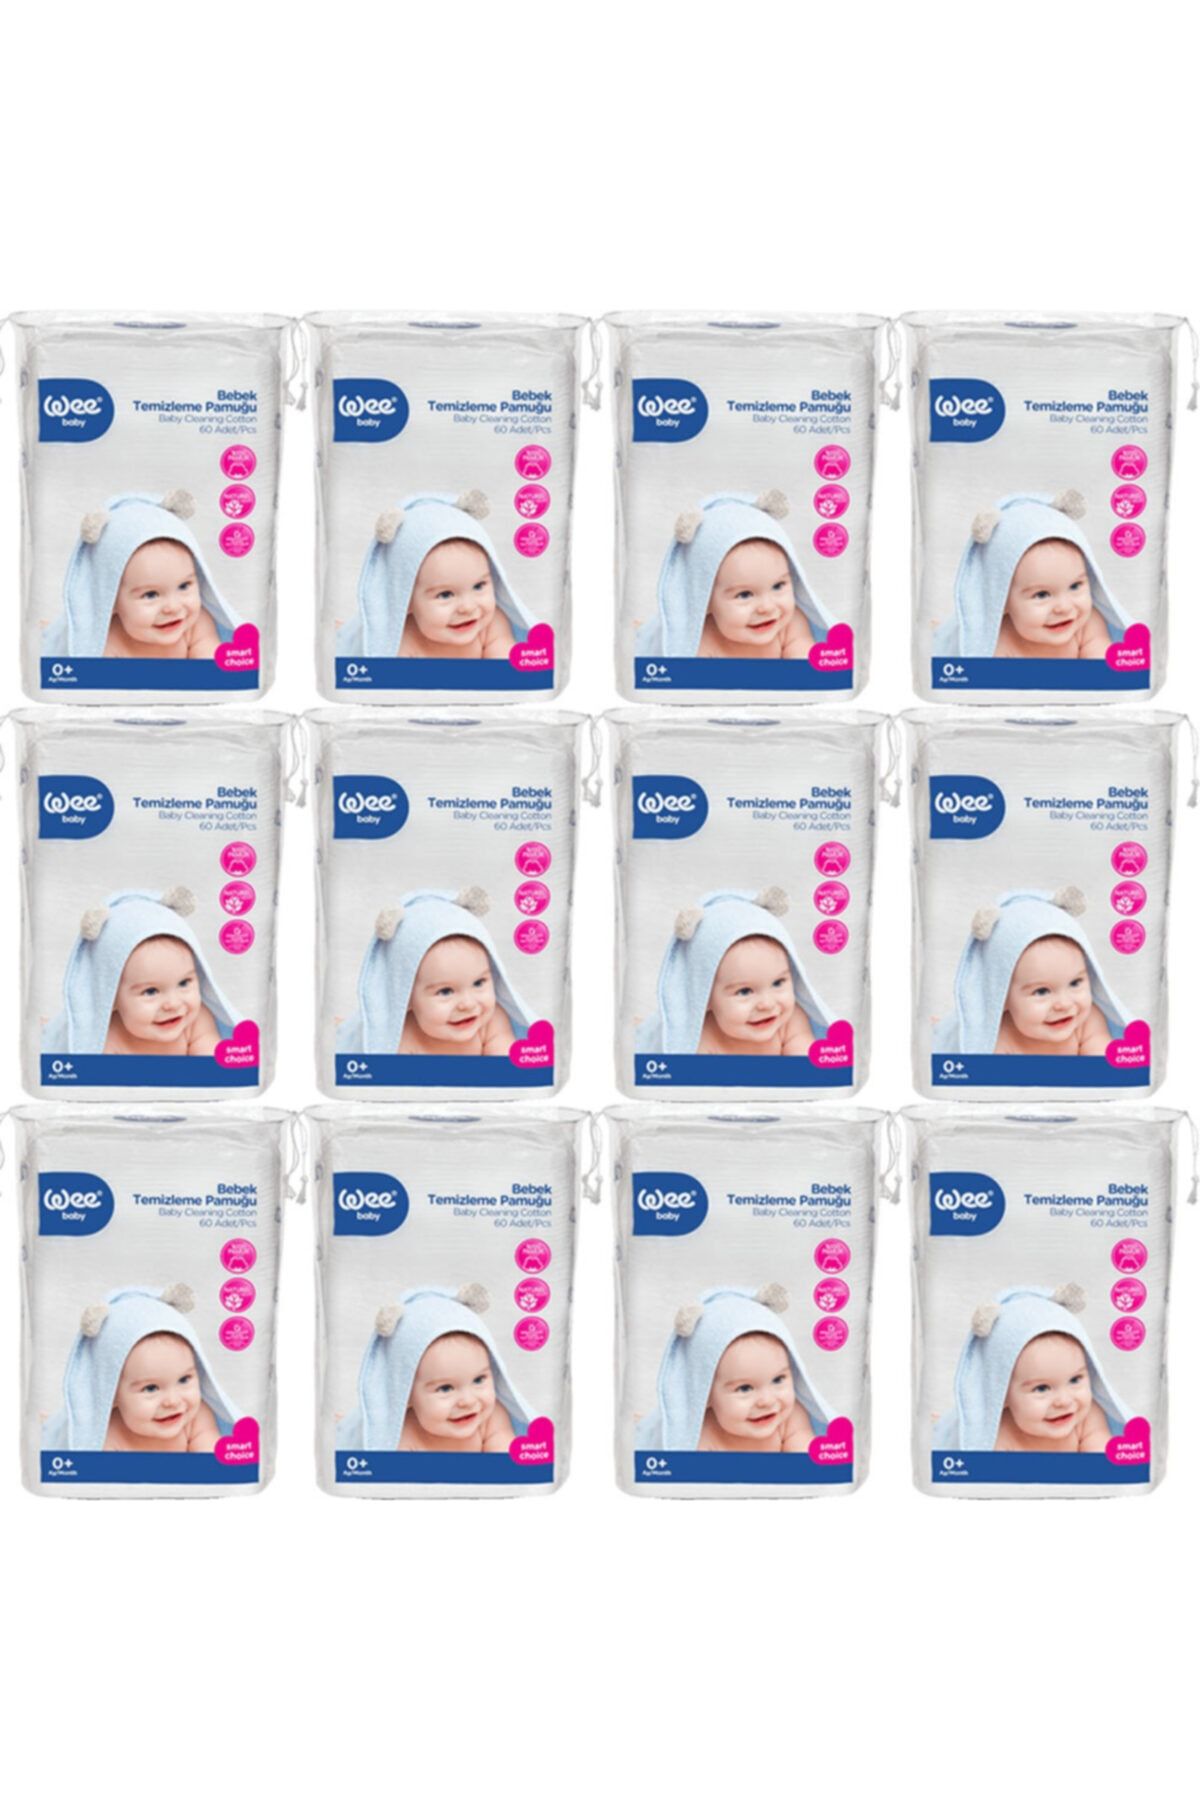 Wee Bebek Temizleme Pamuğu 60 Lı 12 Paket 720 Kullanım